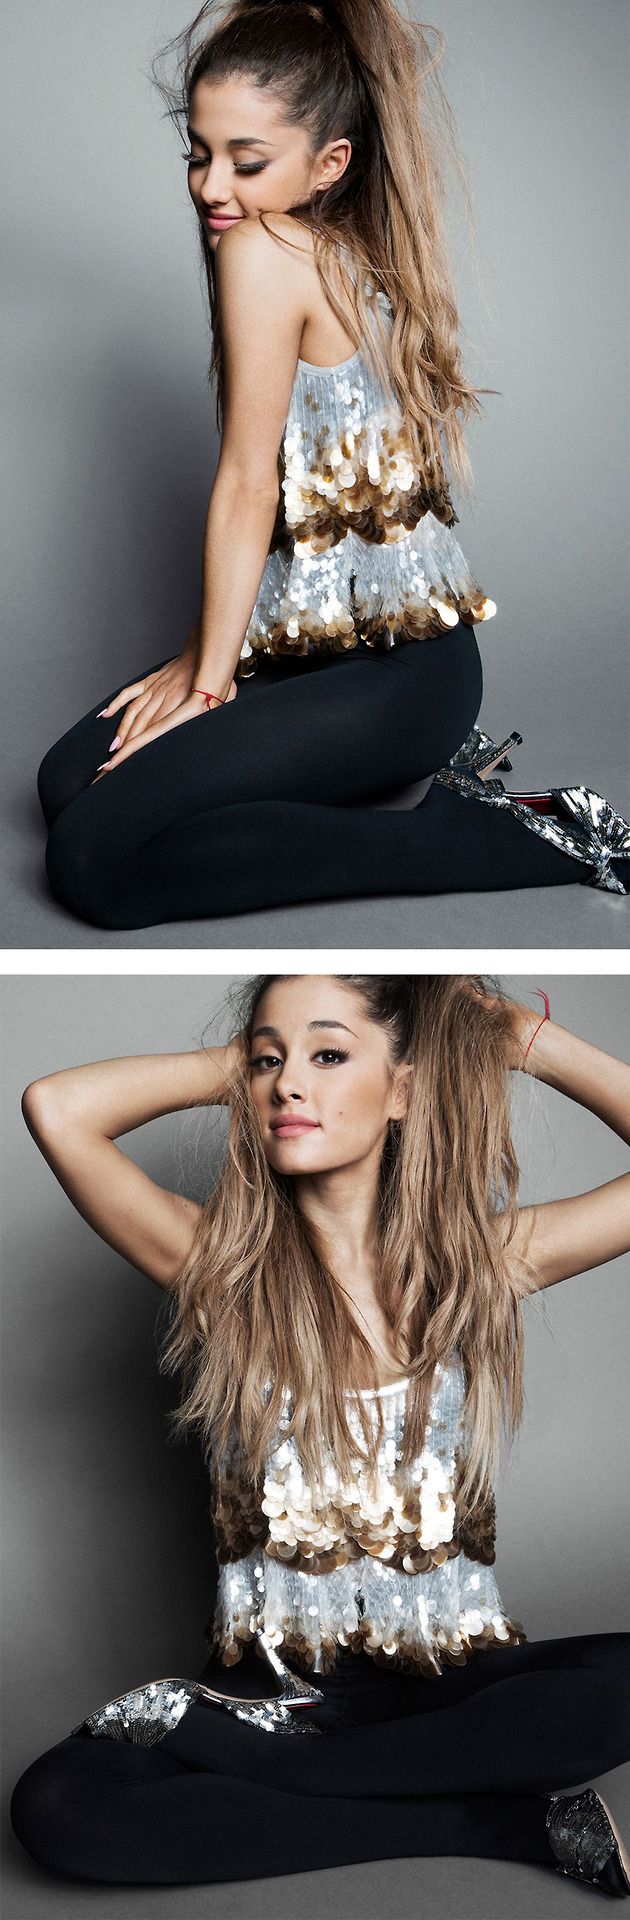 Best Ariana Grande Photoshoot Ideas On Pinterest Ariana 2